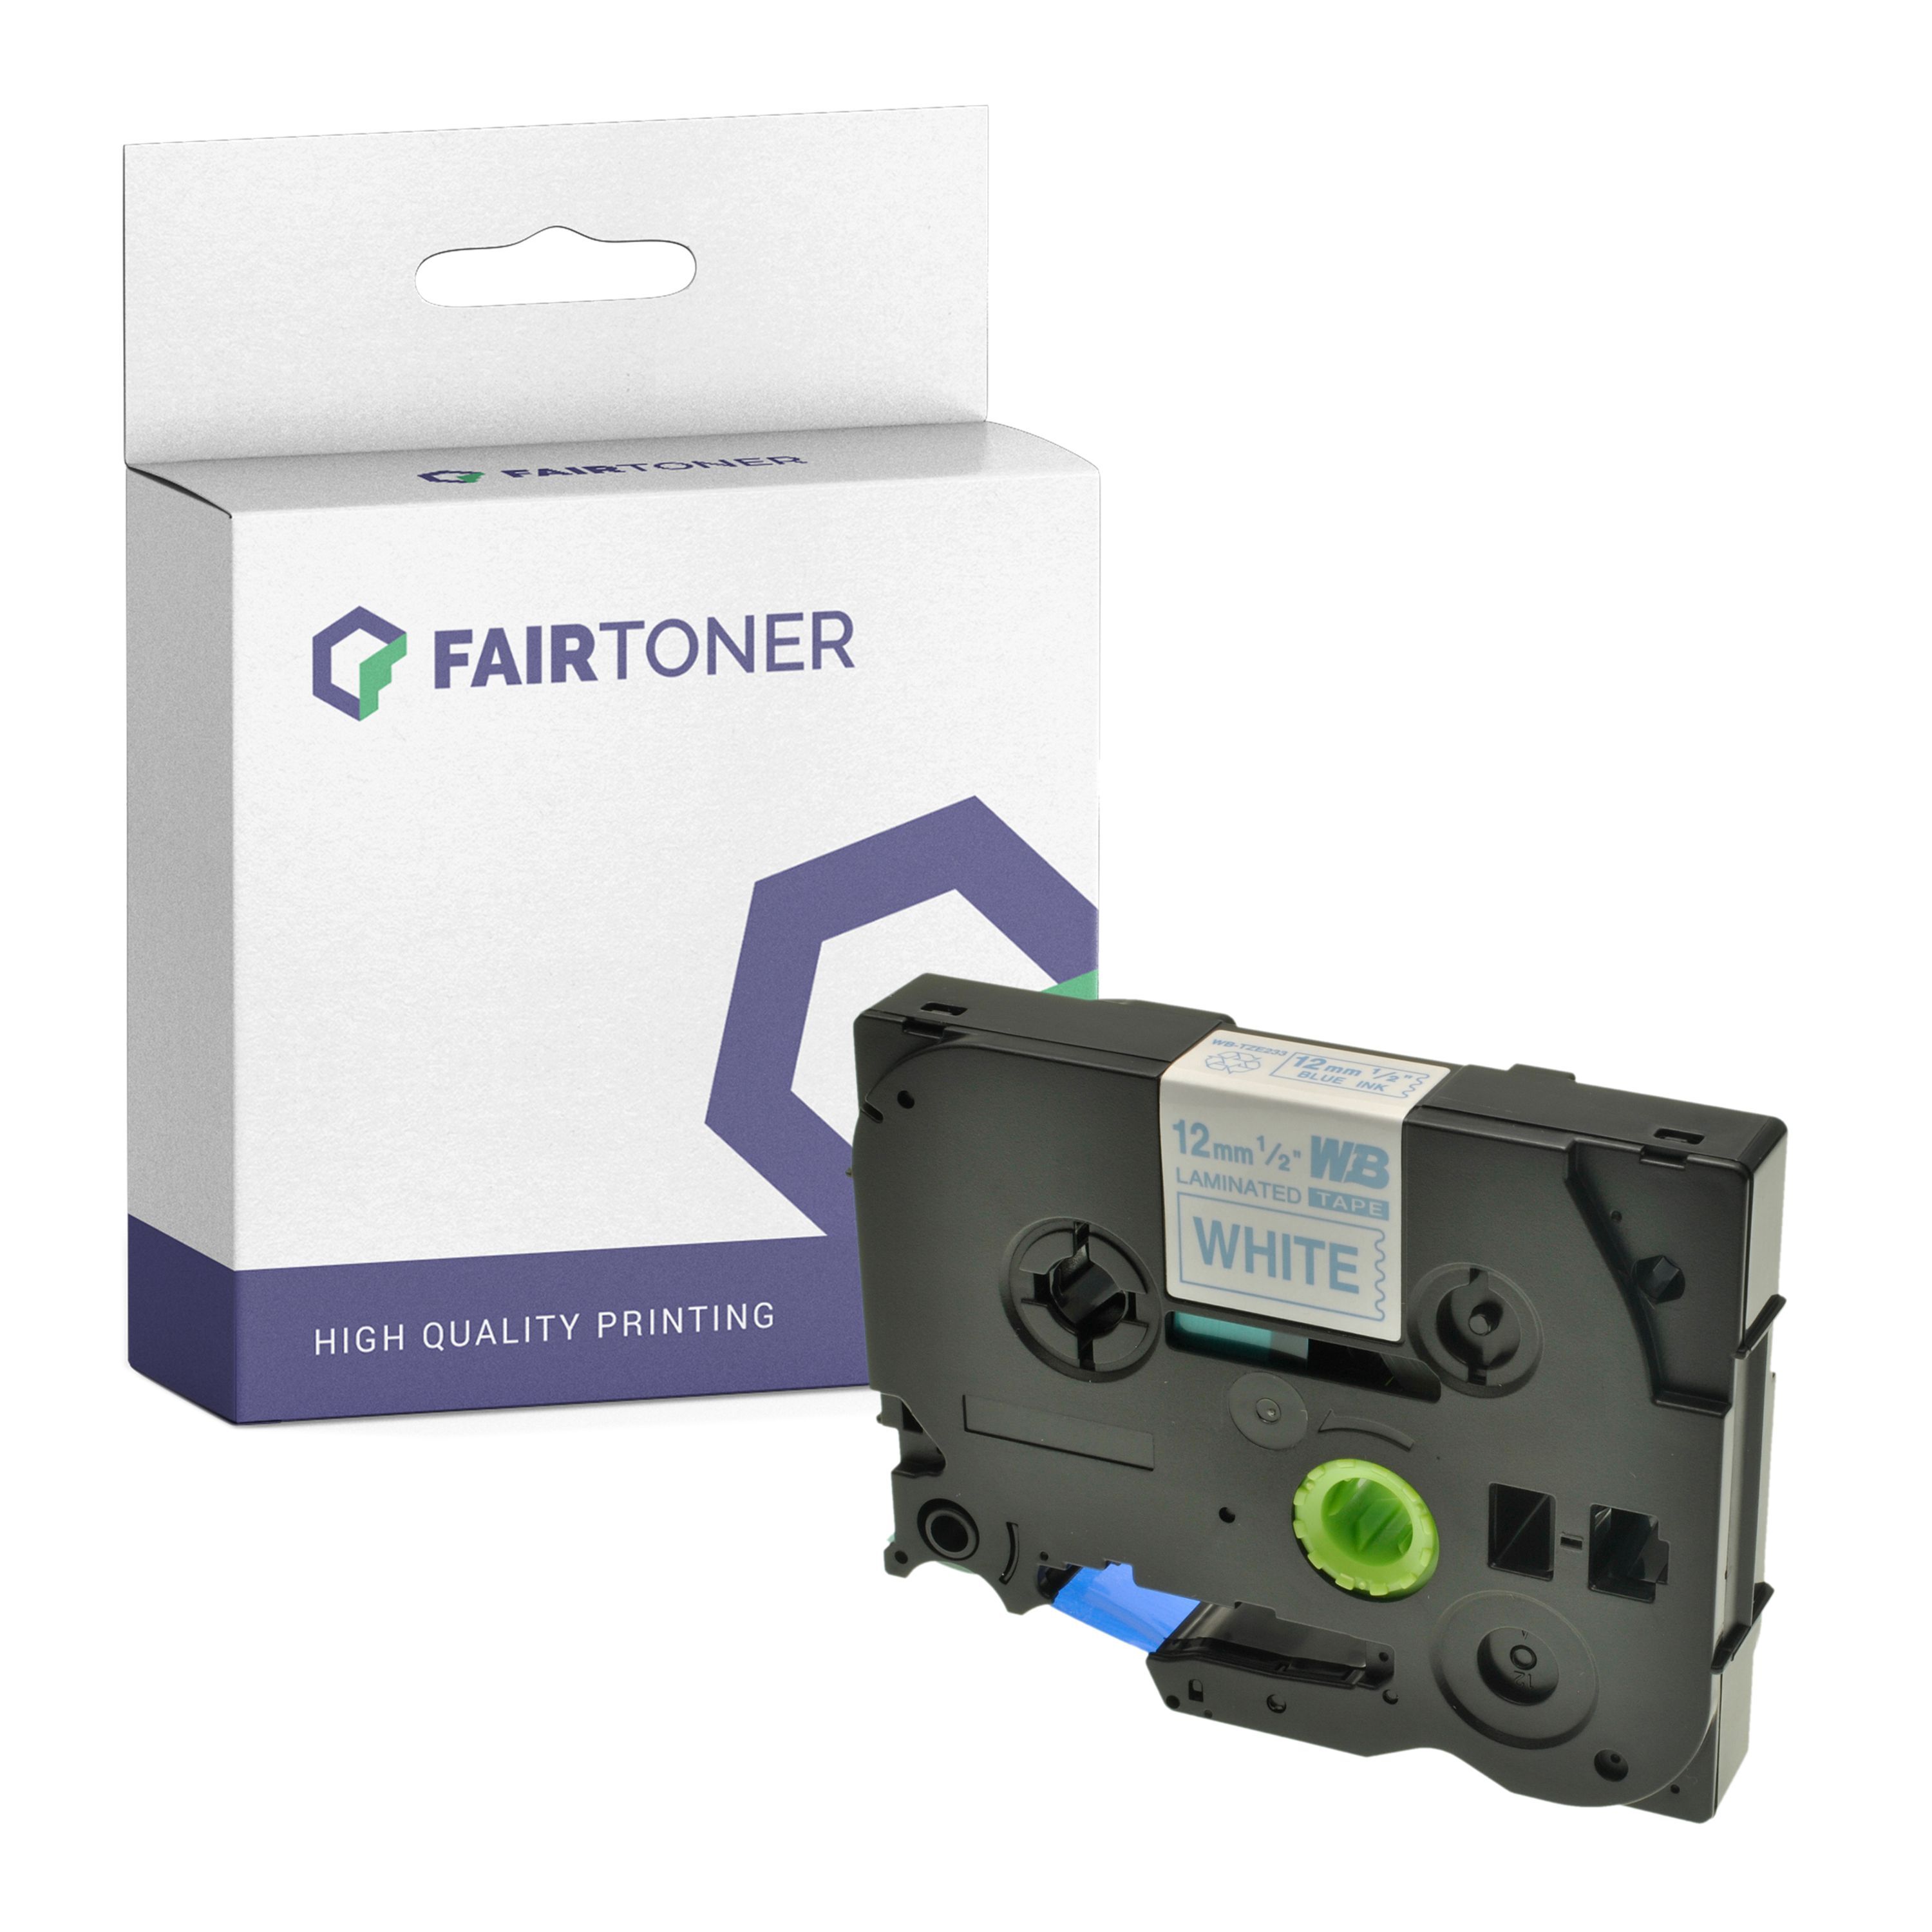 FairToner Kompatibel zu Brother P-Touch 1280 DT (TZE-233) Schriftband 12mm/8m Blau auf Weiss